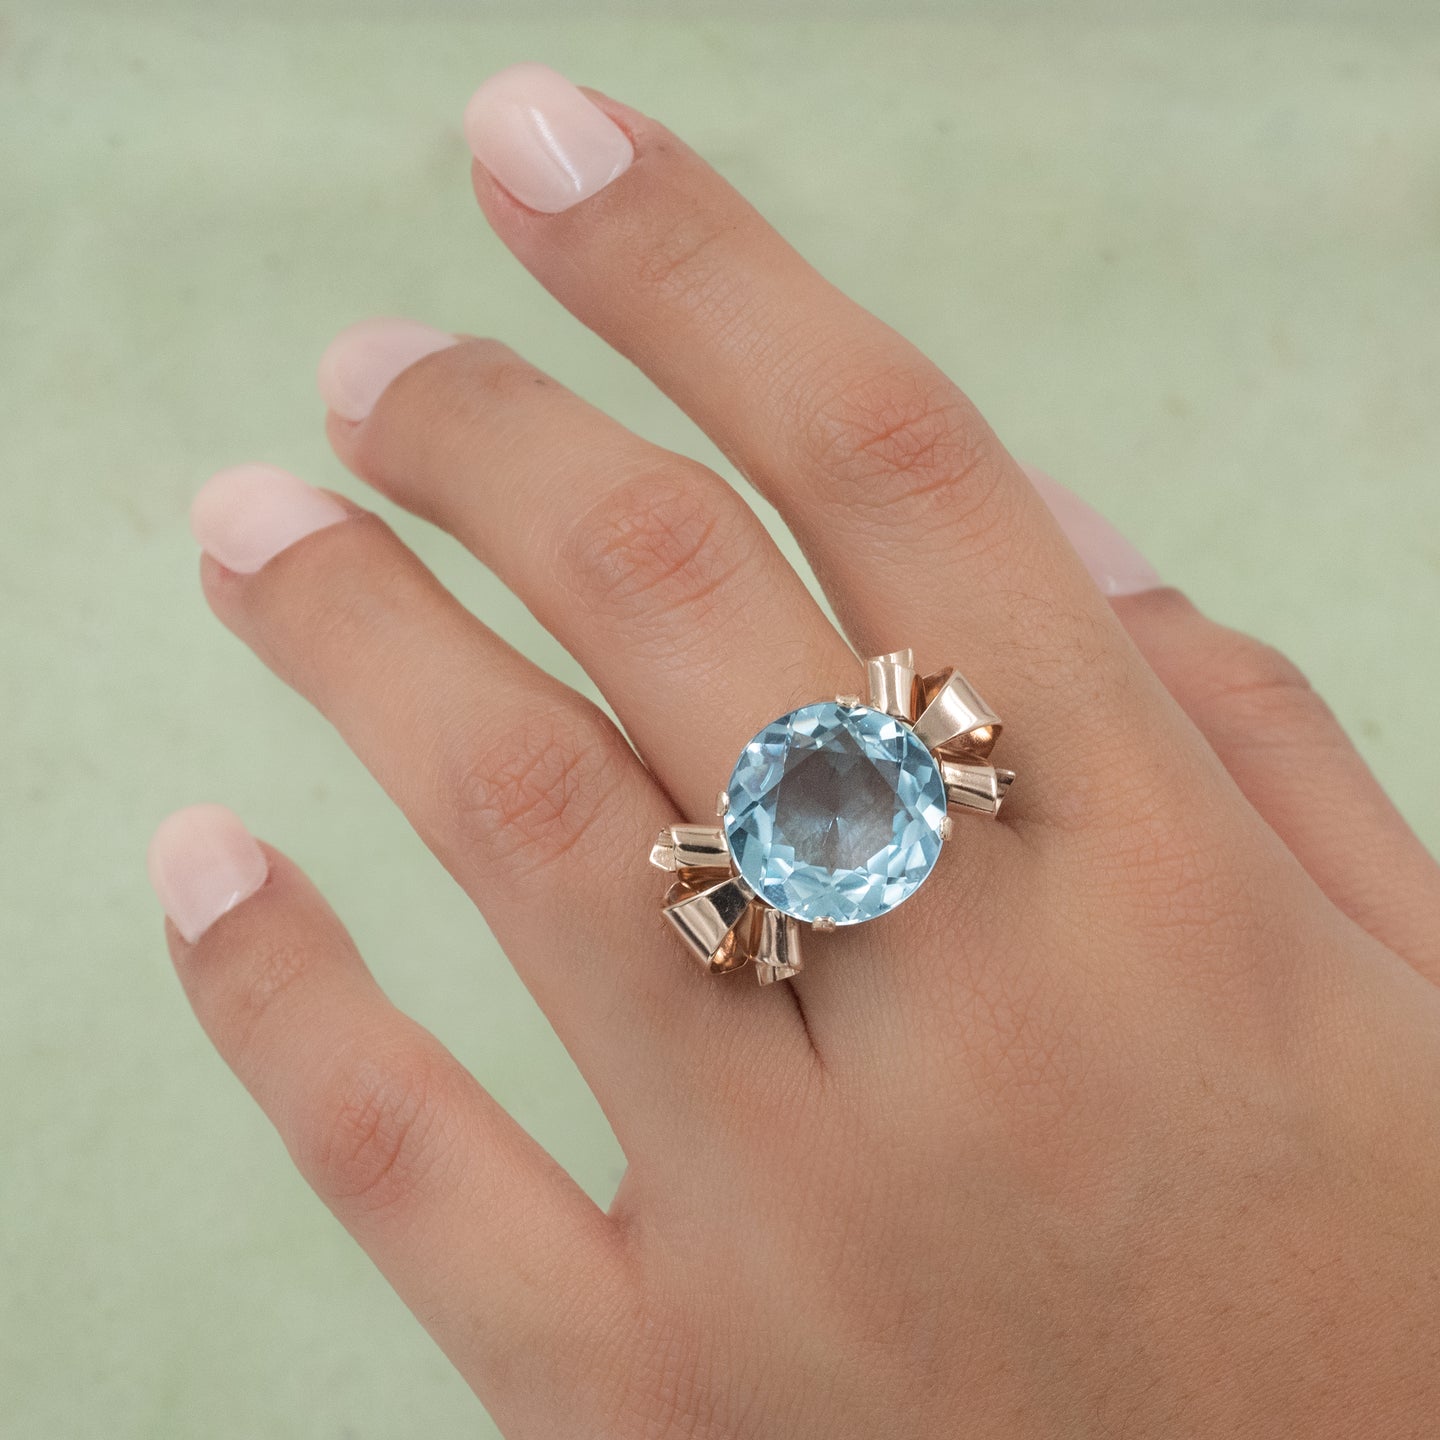 Princess Diana replica ring blue aquamarine ring